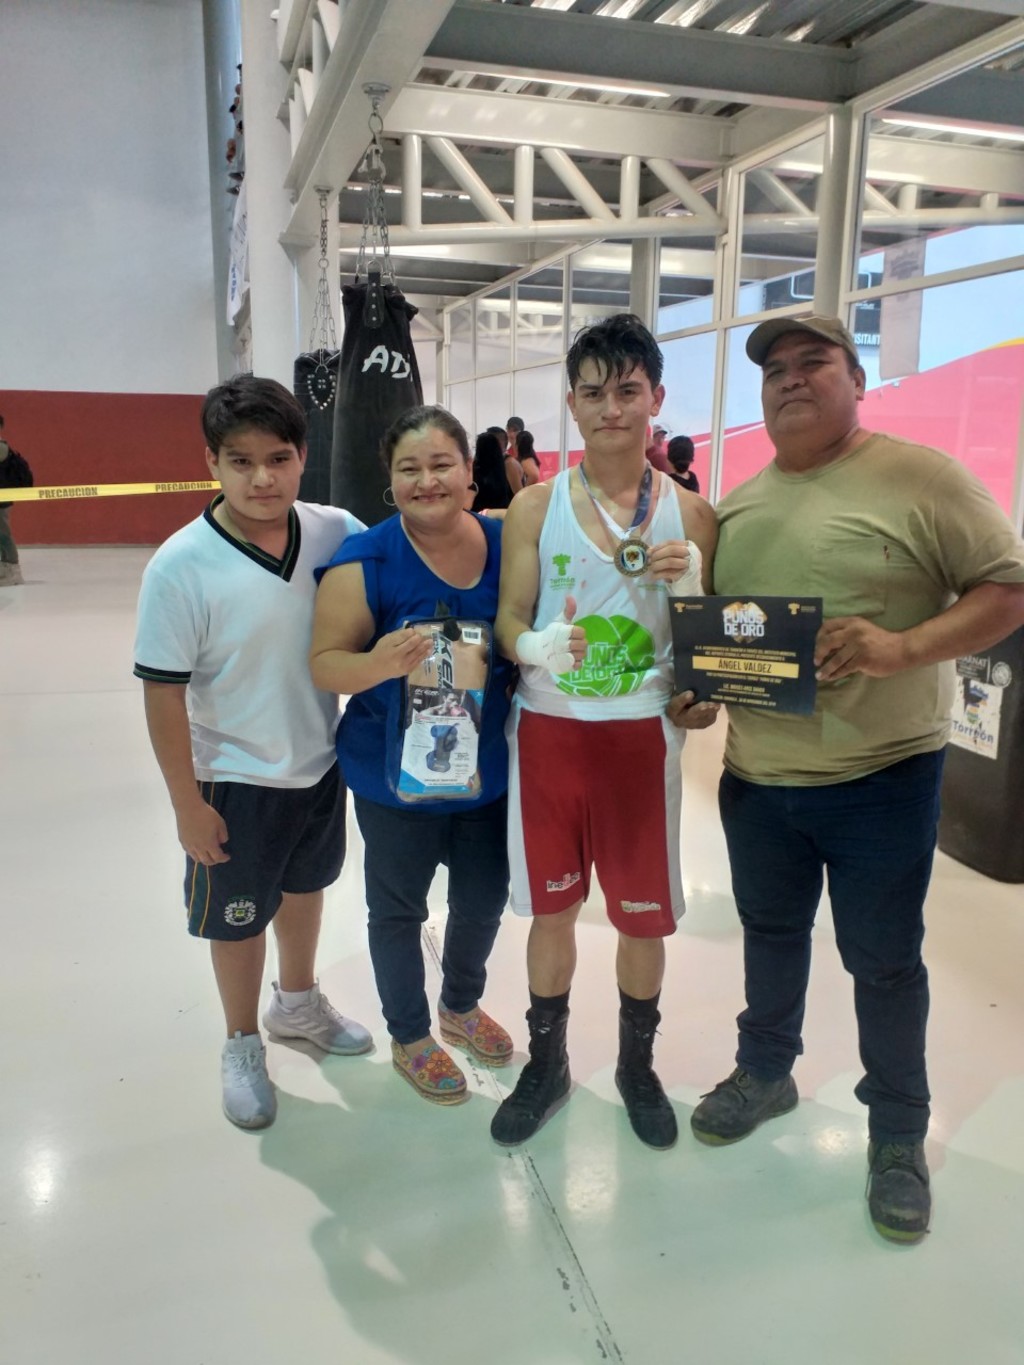 El joven pugilista ha contado con el apoyo de su familia durante su carrera como peleador amateur, soñando llegar al profesionalismo. (ESPECIAL)